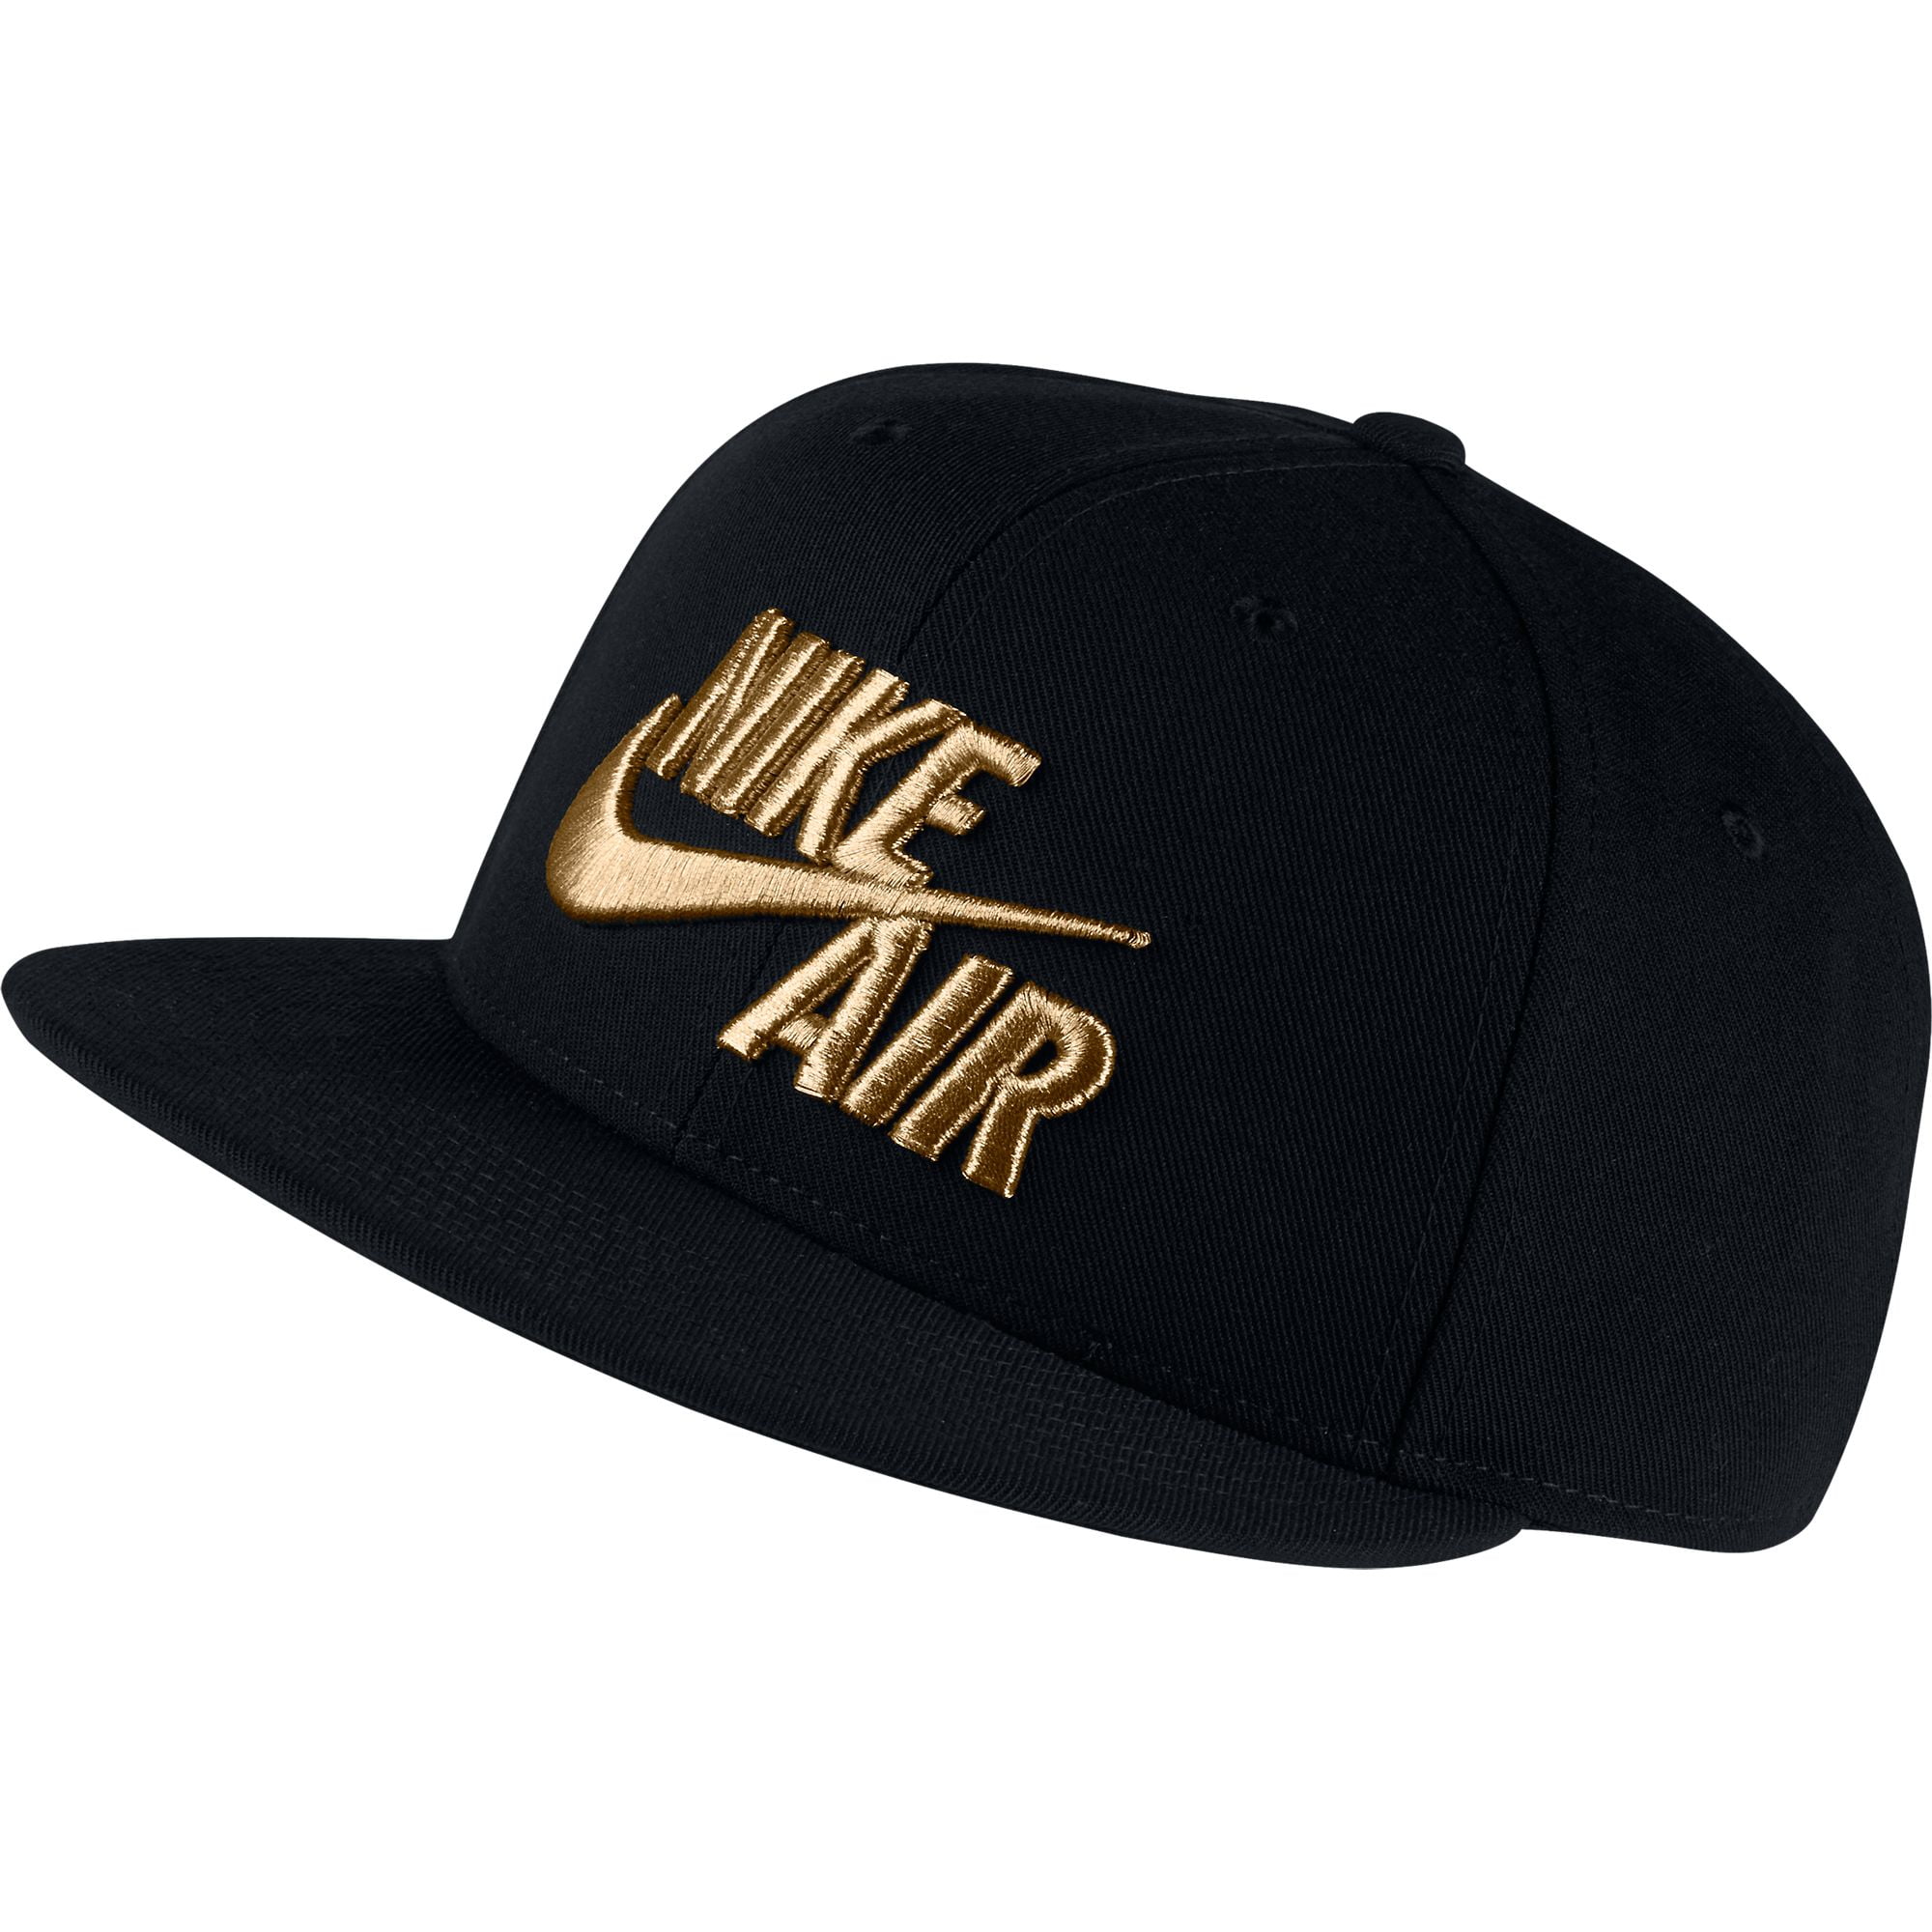 Nike True Snapback Hat Black/Metallic Gold 805063-011 Walmart.com